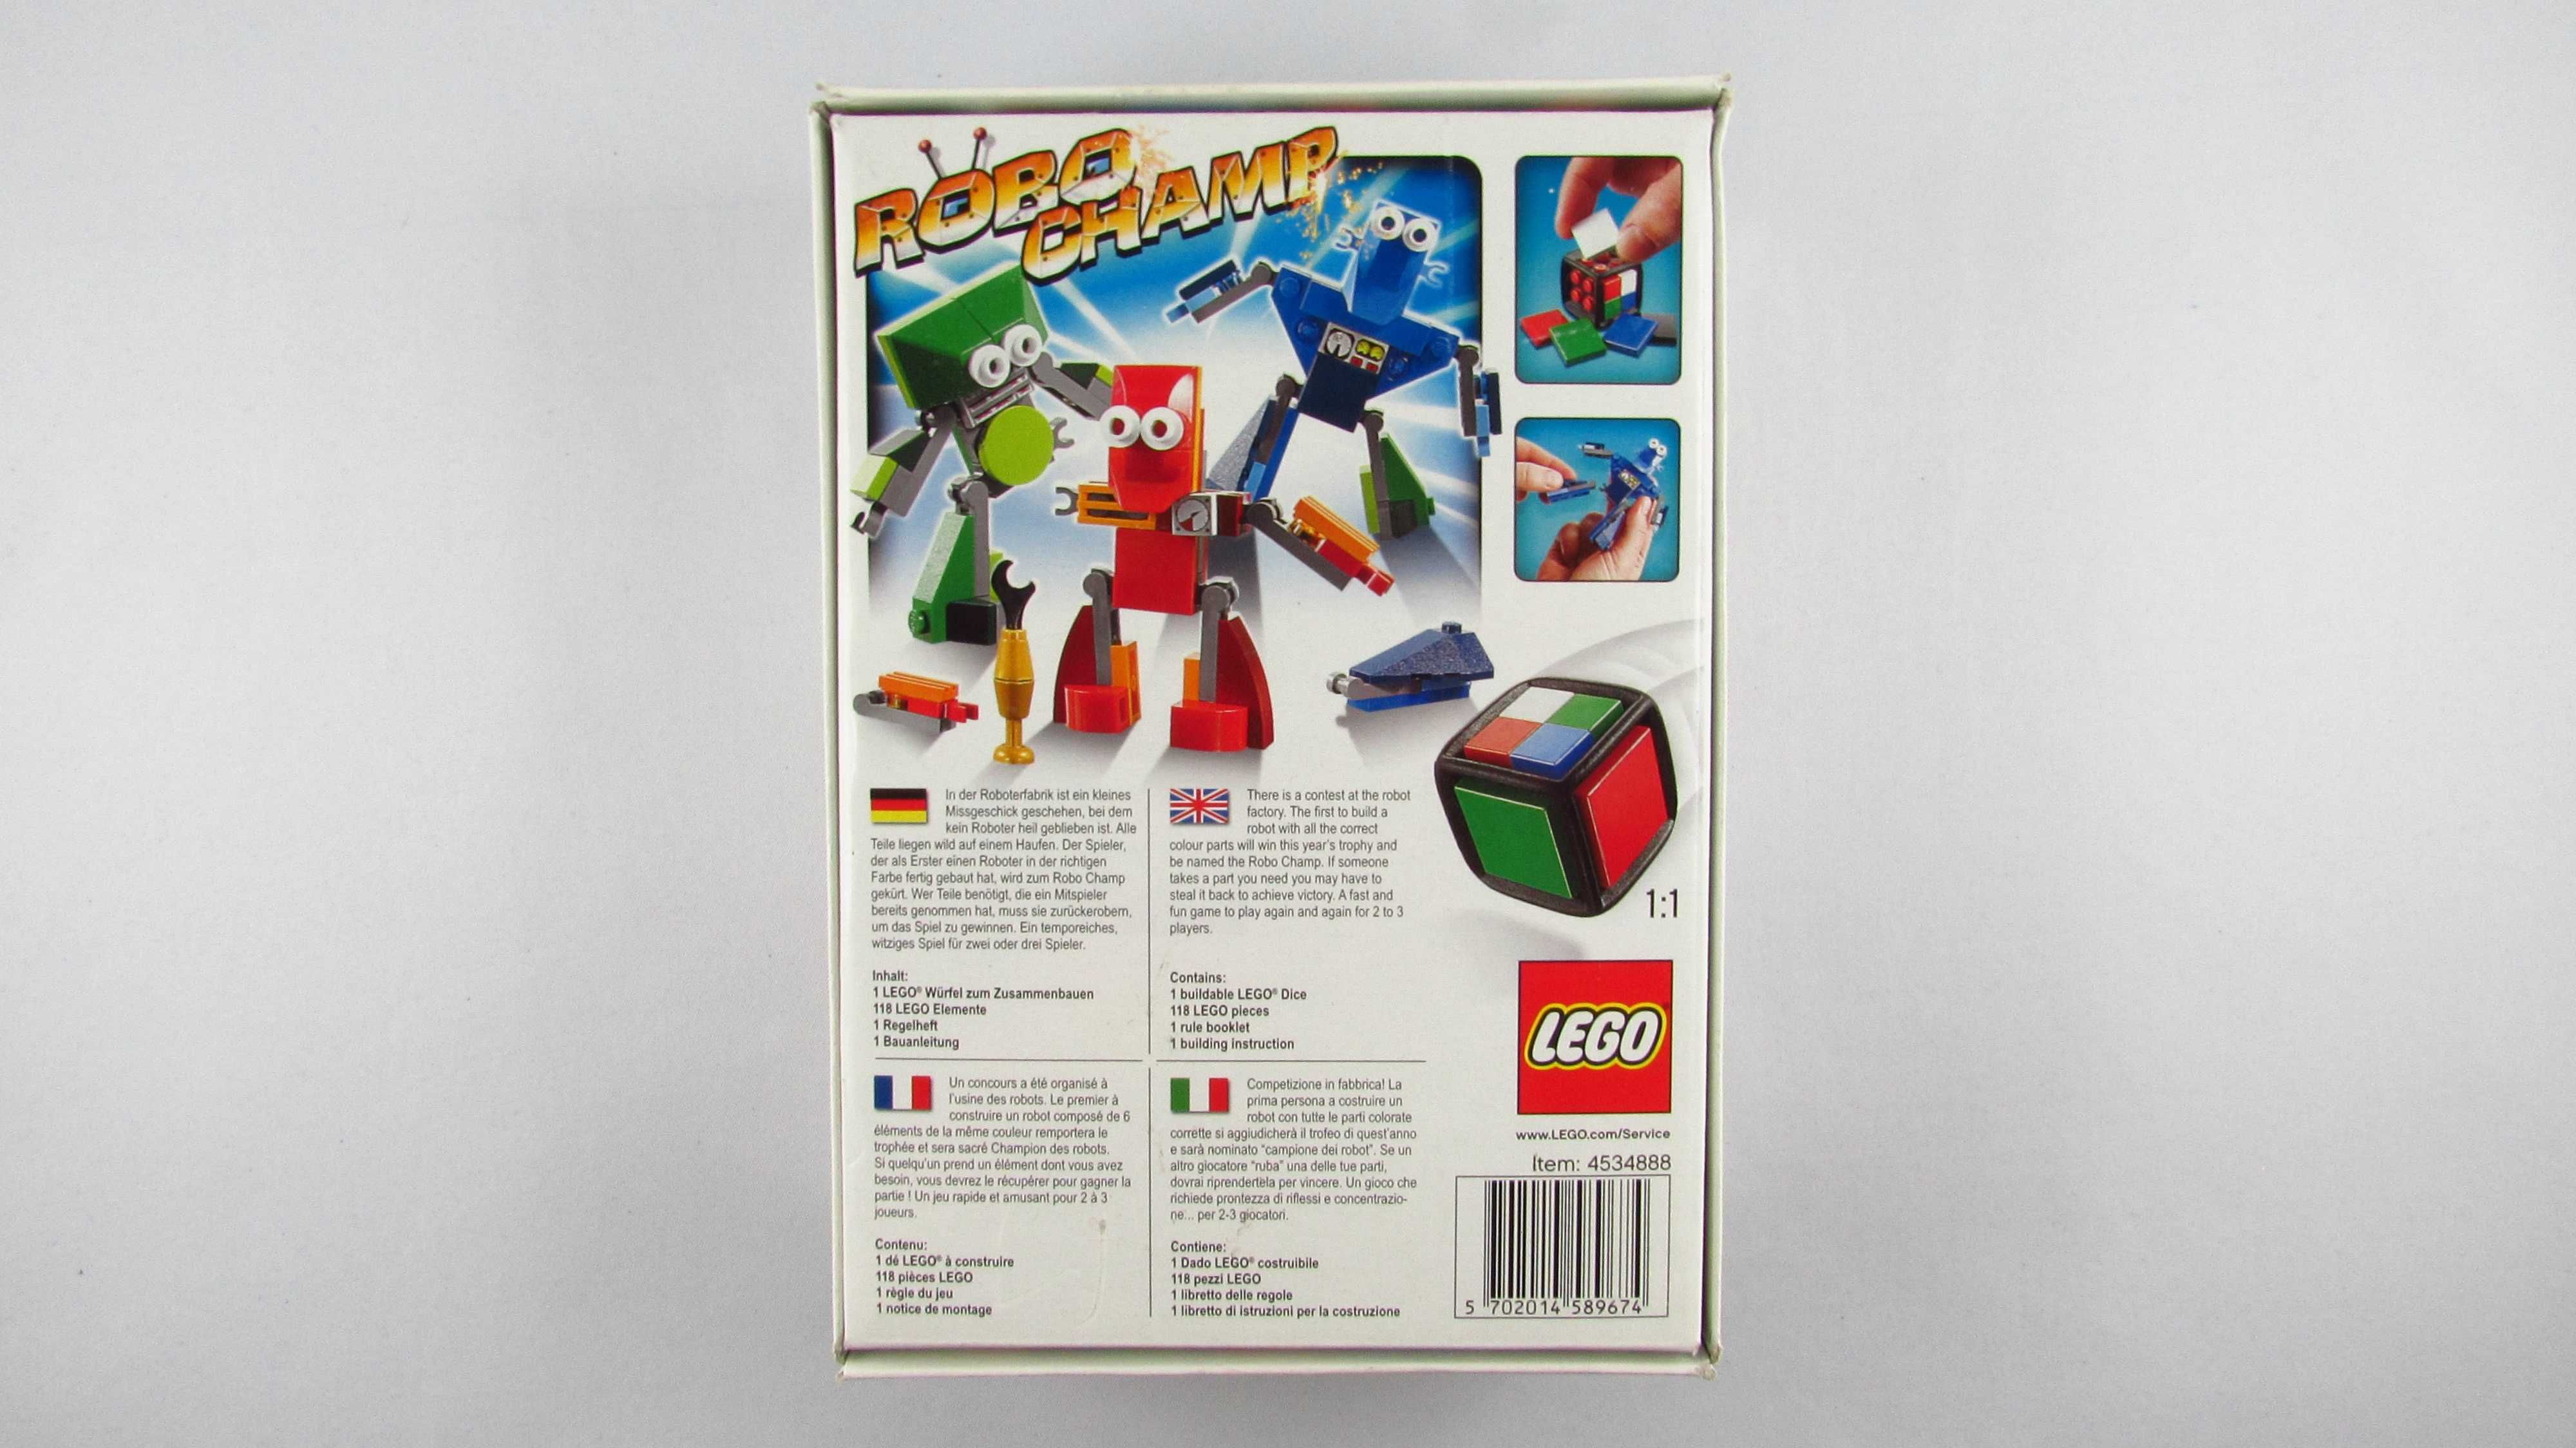 LEGO - Robo Champ Gra Planszowa 3835